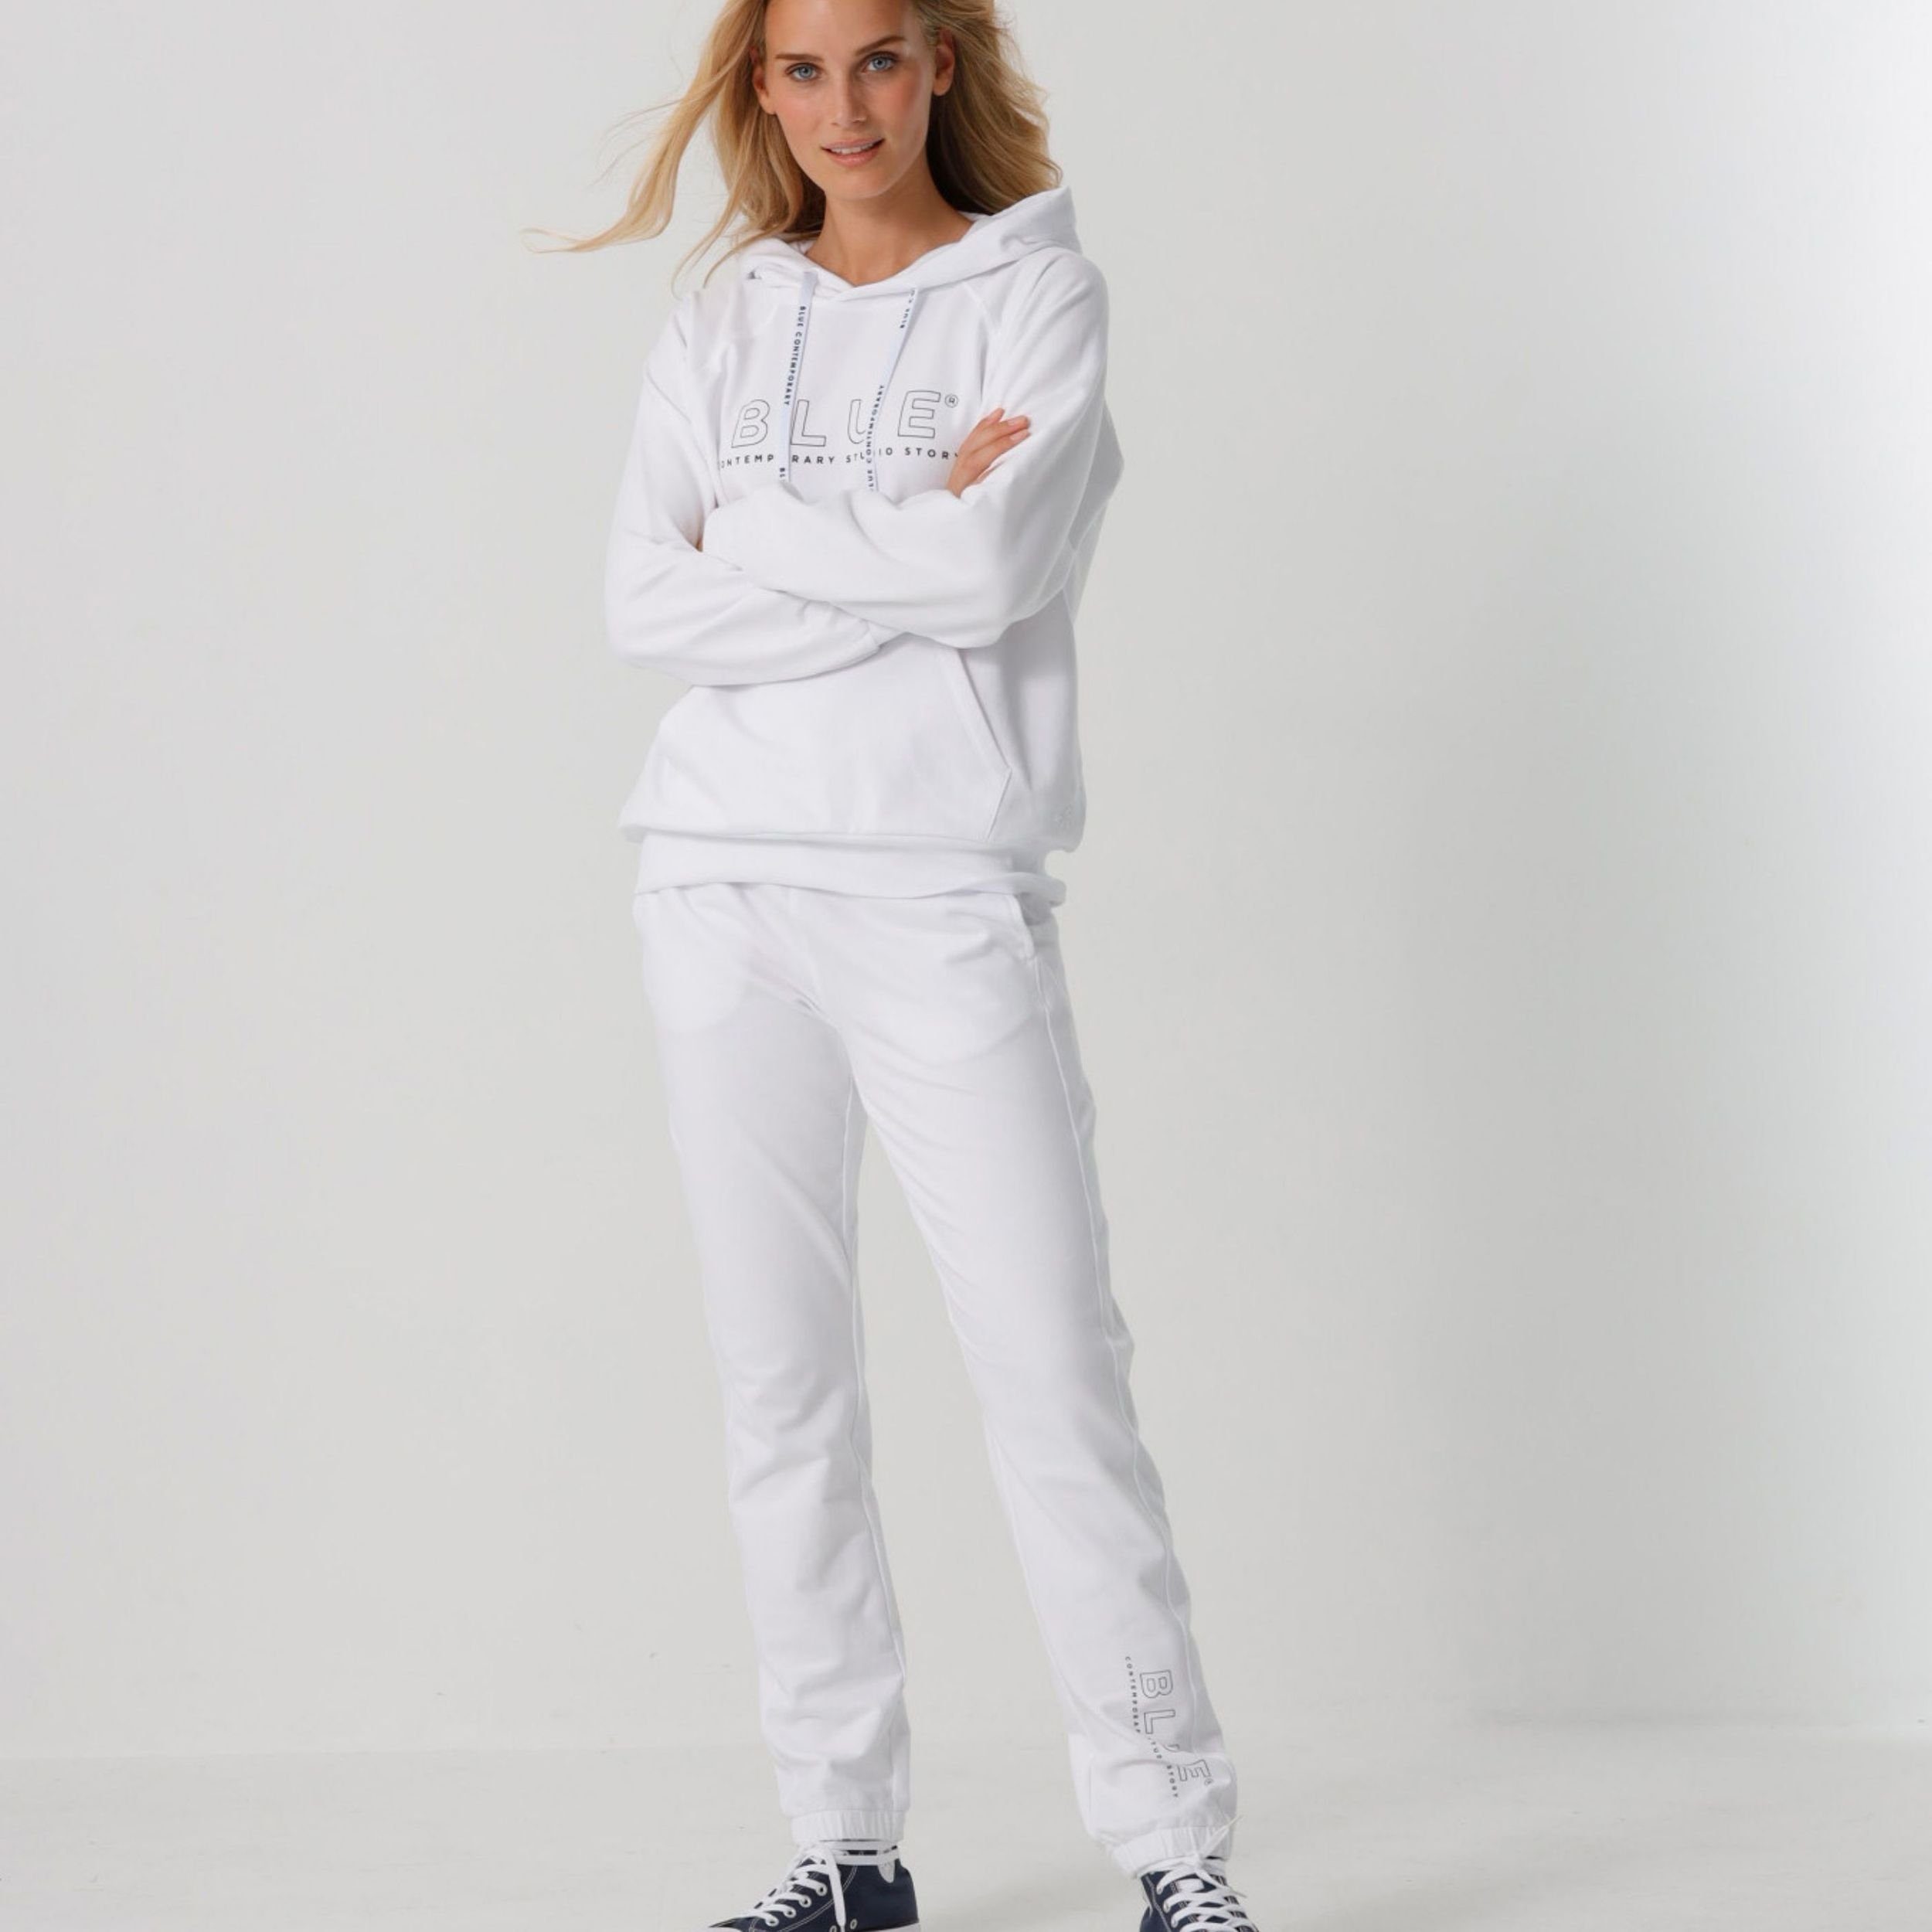 Pants versch. Jogginghose mit Aufdruck Baumwolle Base Jogger Weiß Blue aus in und Sportswear Gummizug Farben